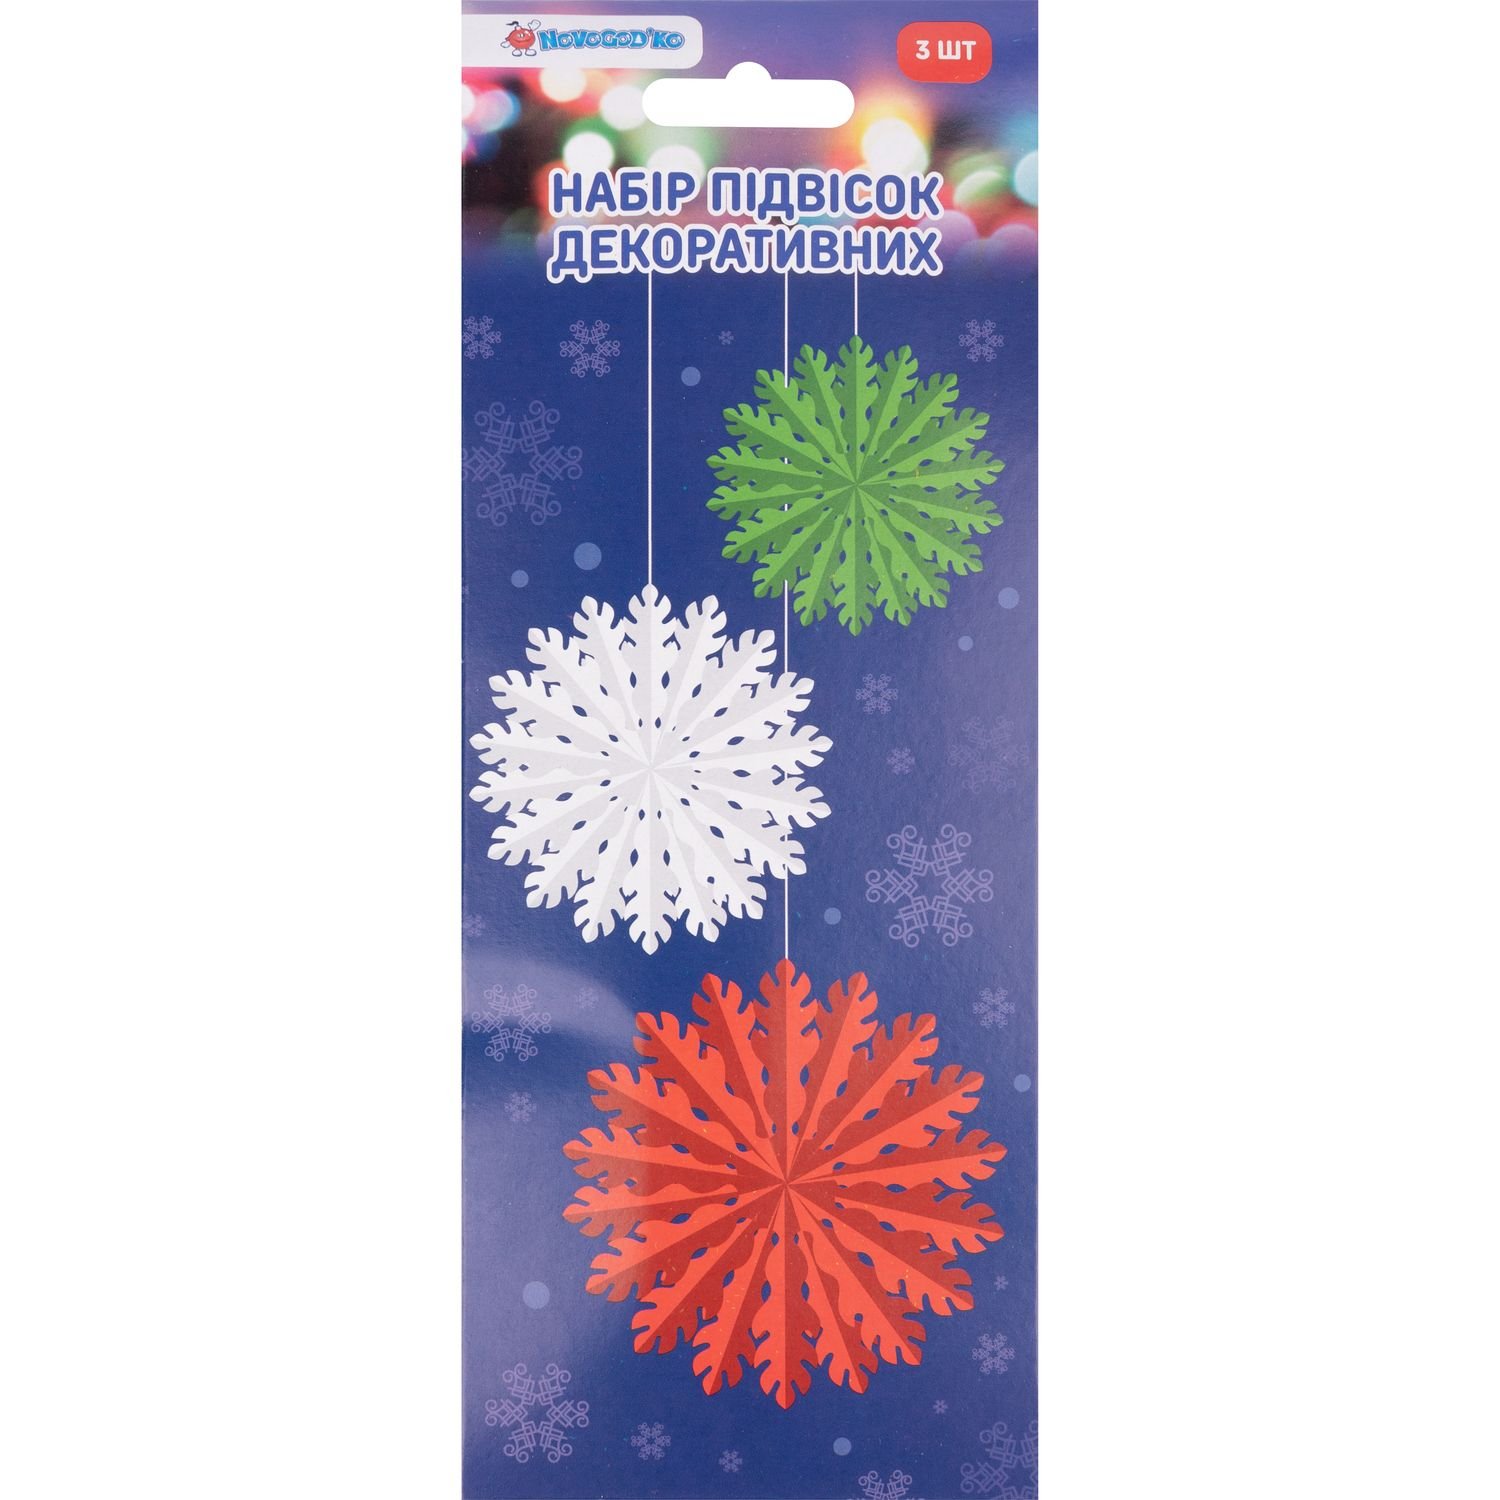 Набір підвісок новорічних паперових Novogod'ko Сніжинки 3D мікс 3 шт. (974708) - фото 2